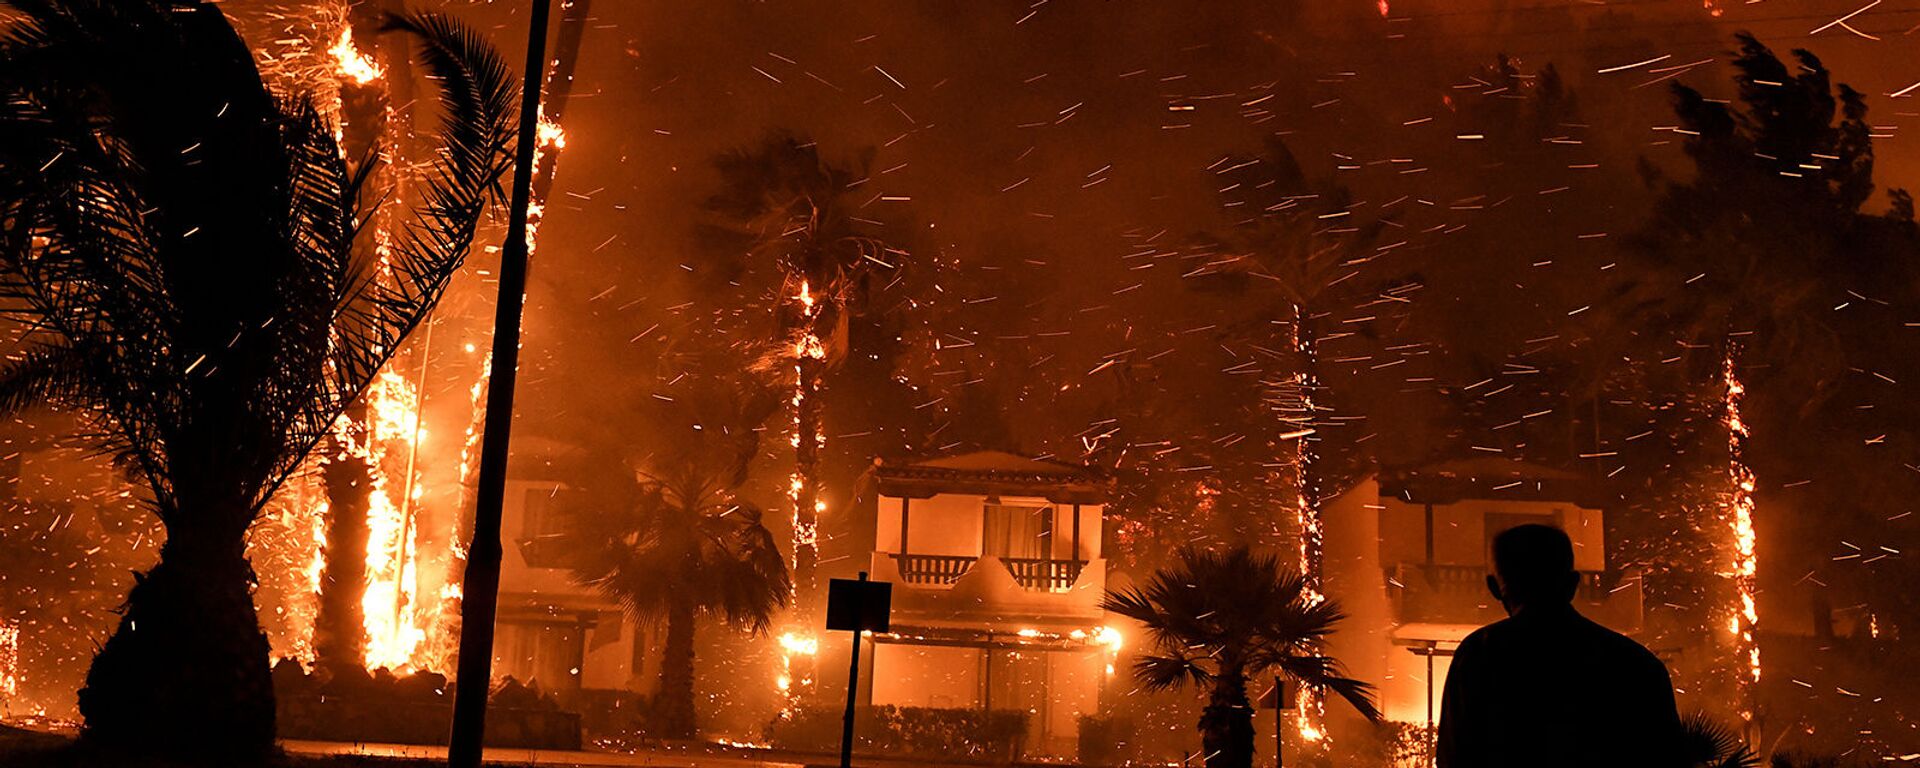 Местный житель среди горящих от лесного пожара домов в деревне Схинос (19 мая 2021). Греция - Sputnik Армения, 1920, 21.05.2021